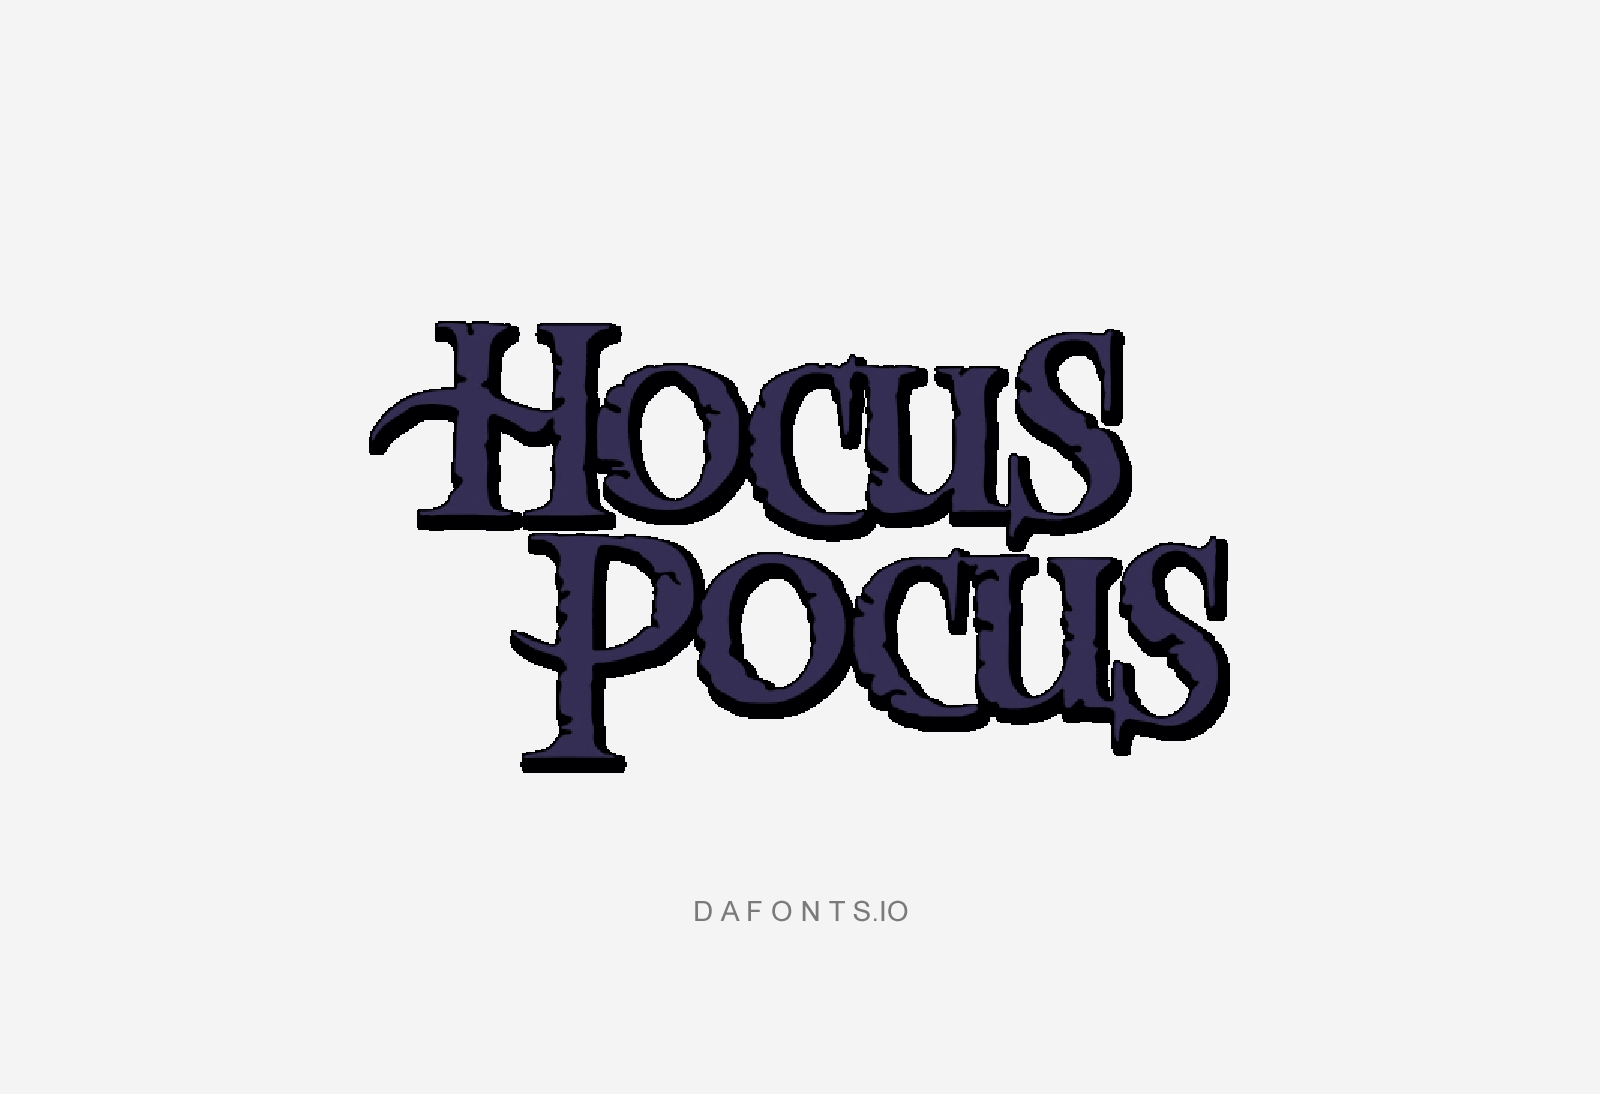 Hocus-Pocus Logo-Font